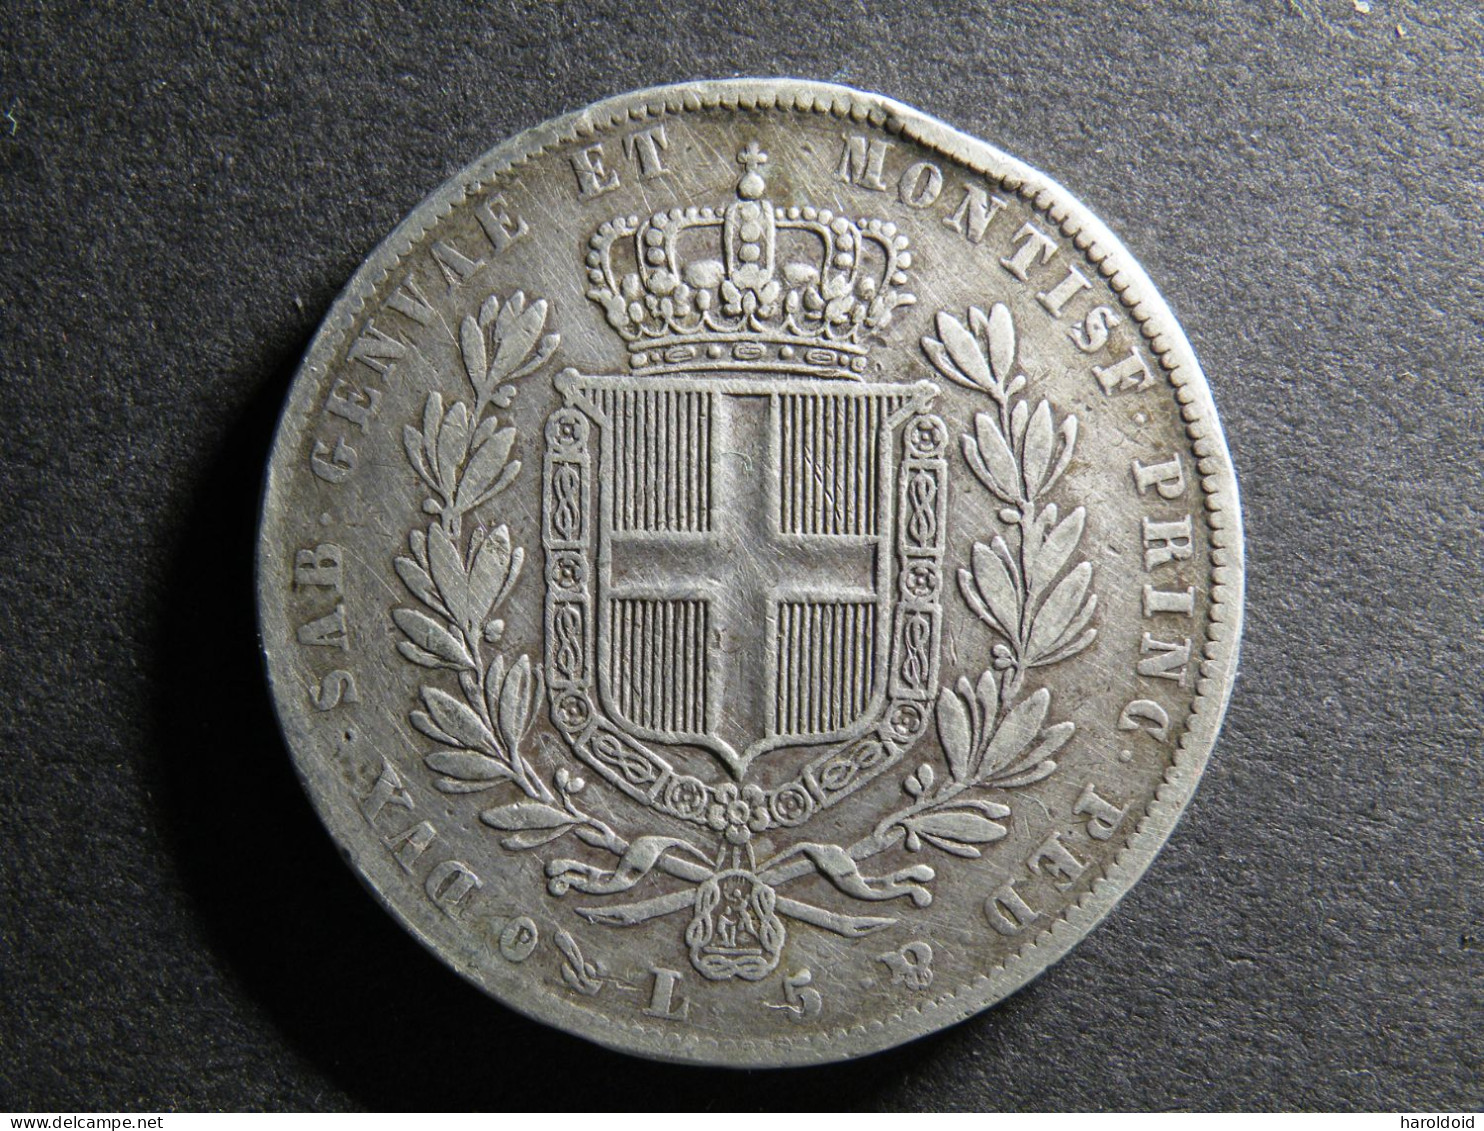 5 LIRE - 1837 P - Piemonte-Sardegna, Savoia Italiana